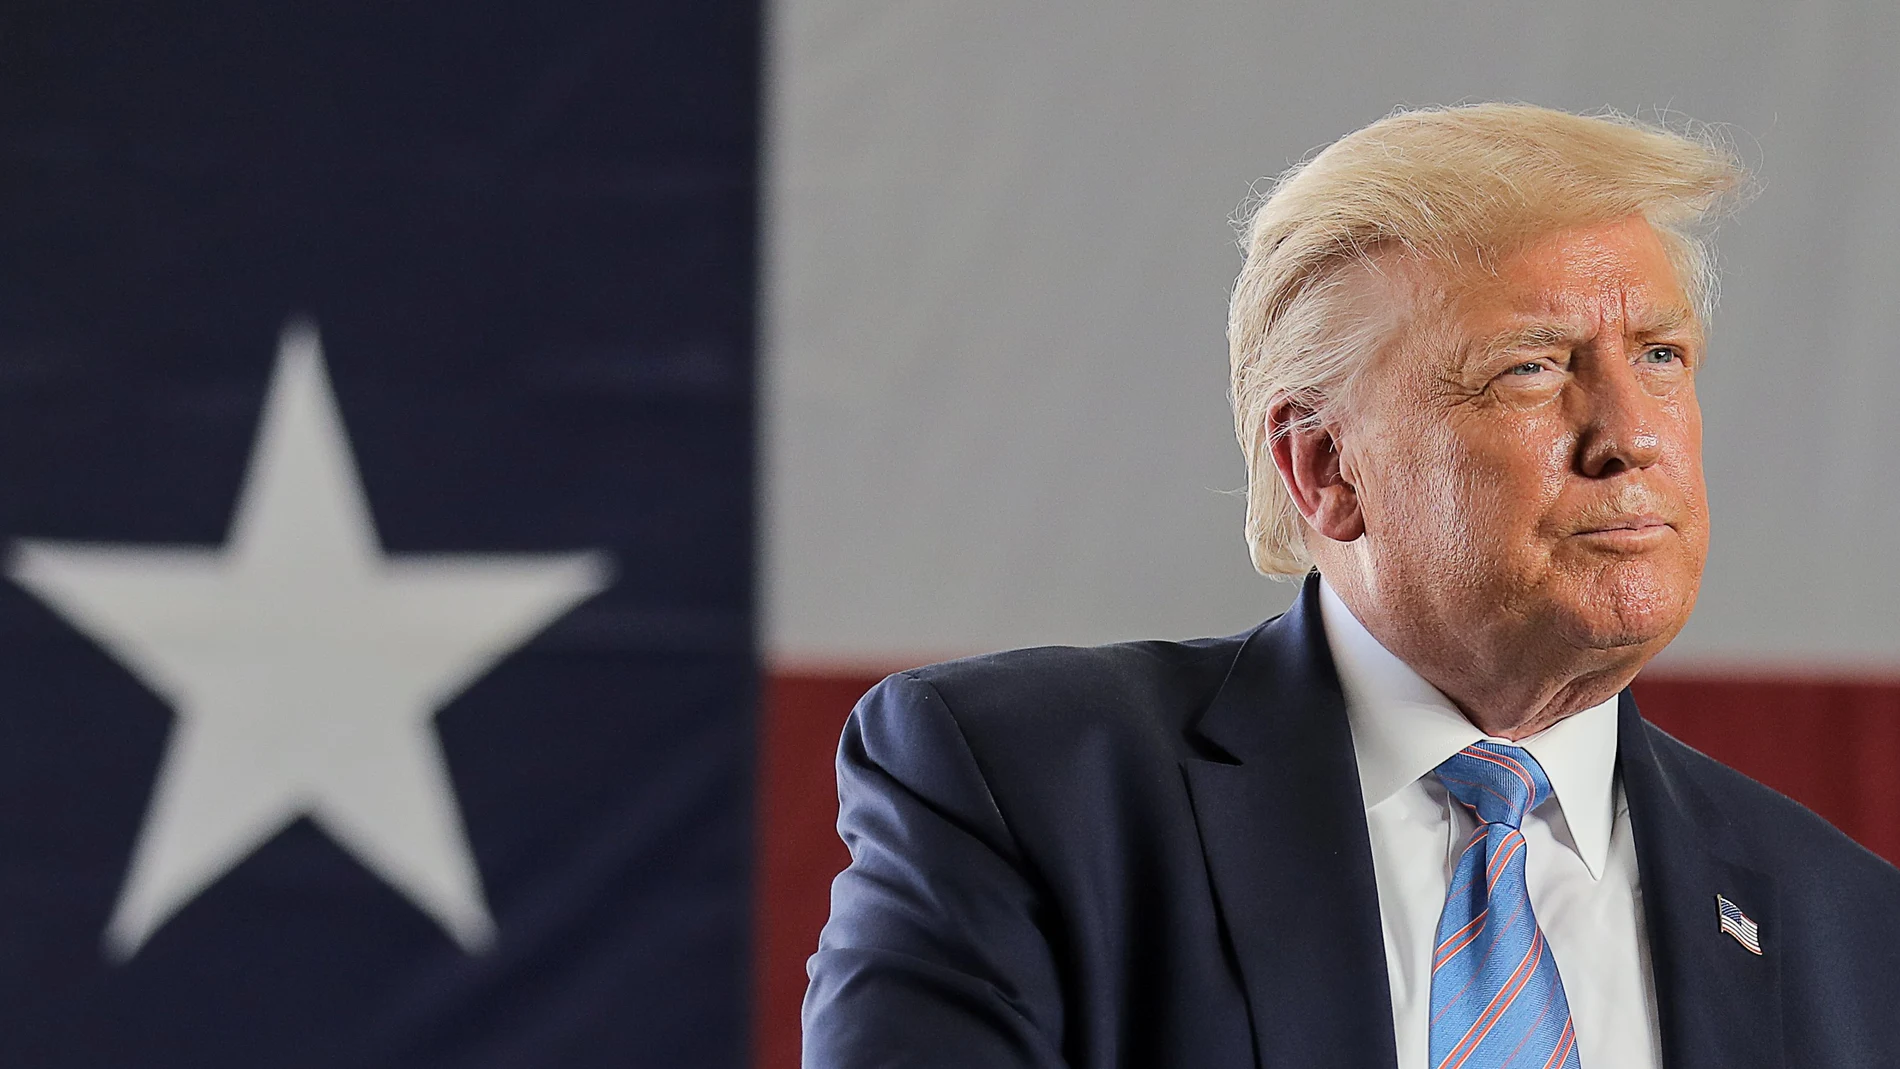 El presidente Donald Trump pronuncia un discurso en Texas esta semana